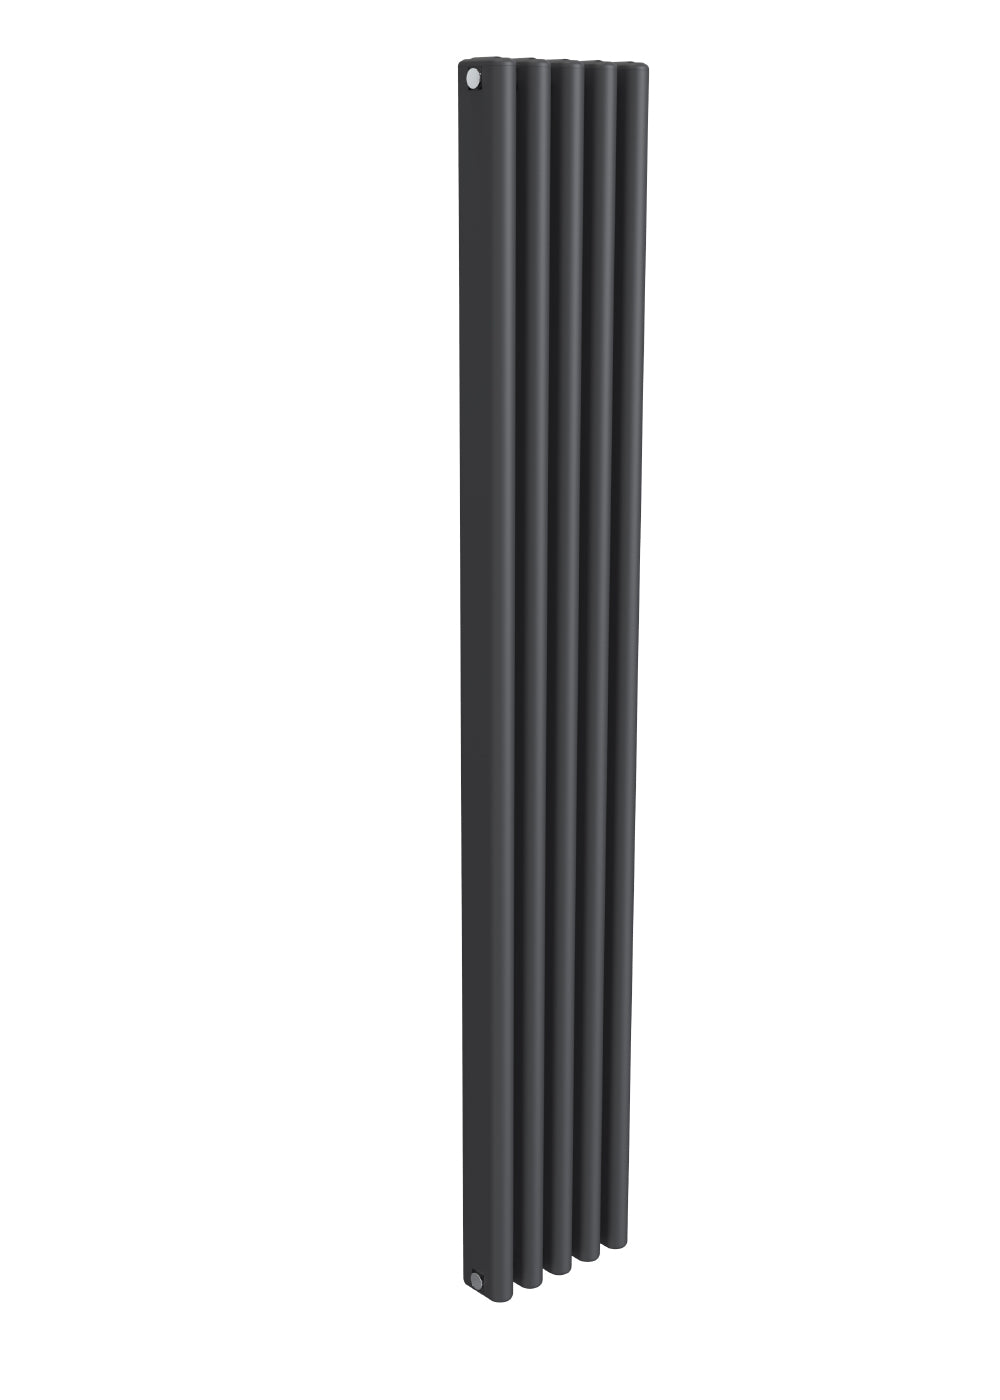 Alco Vertical Aluminium Radiator - 1800mm Tall- Anthracite - Various Sizes